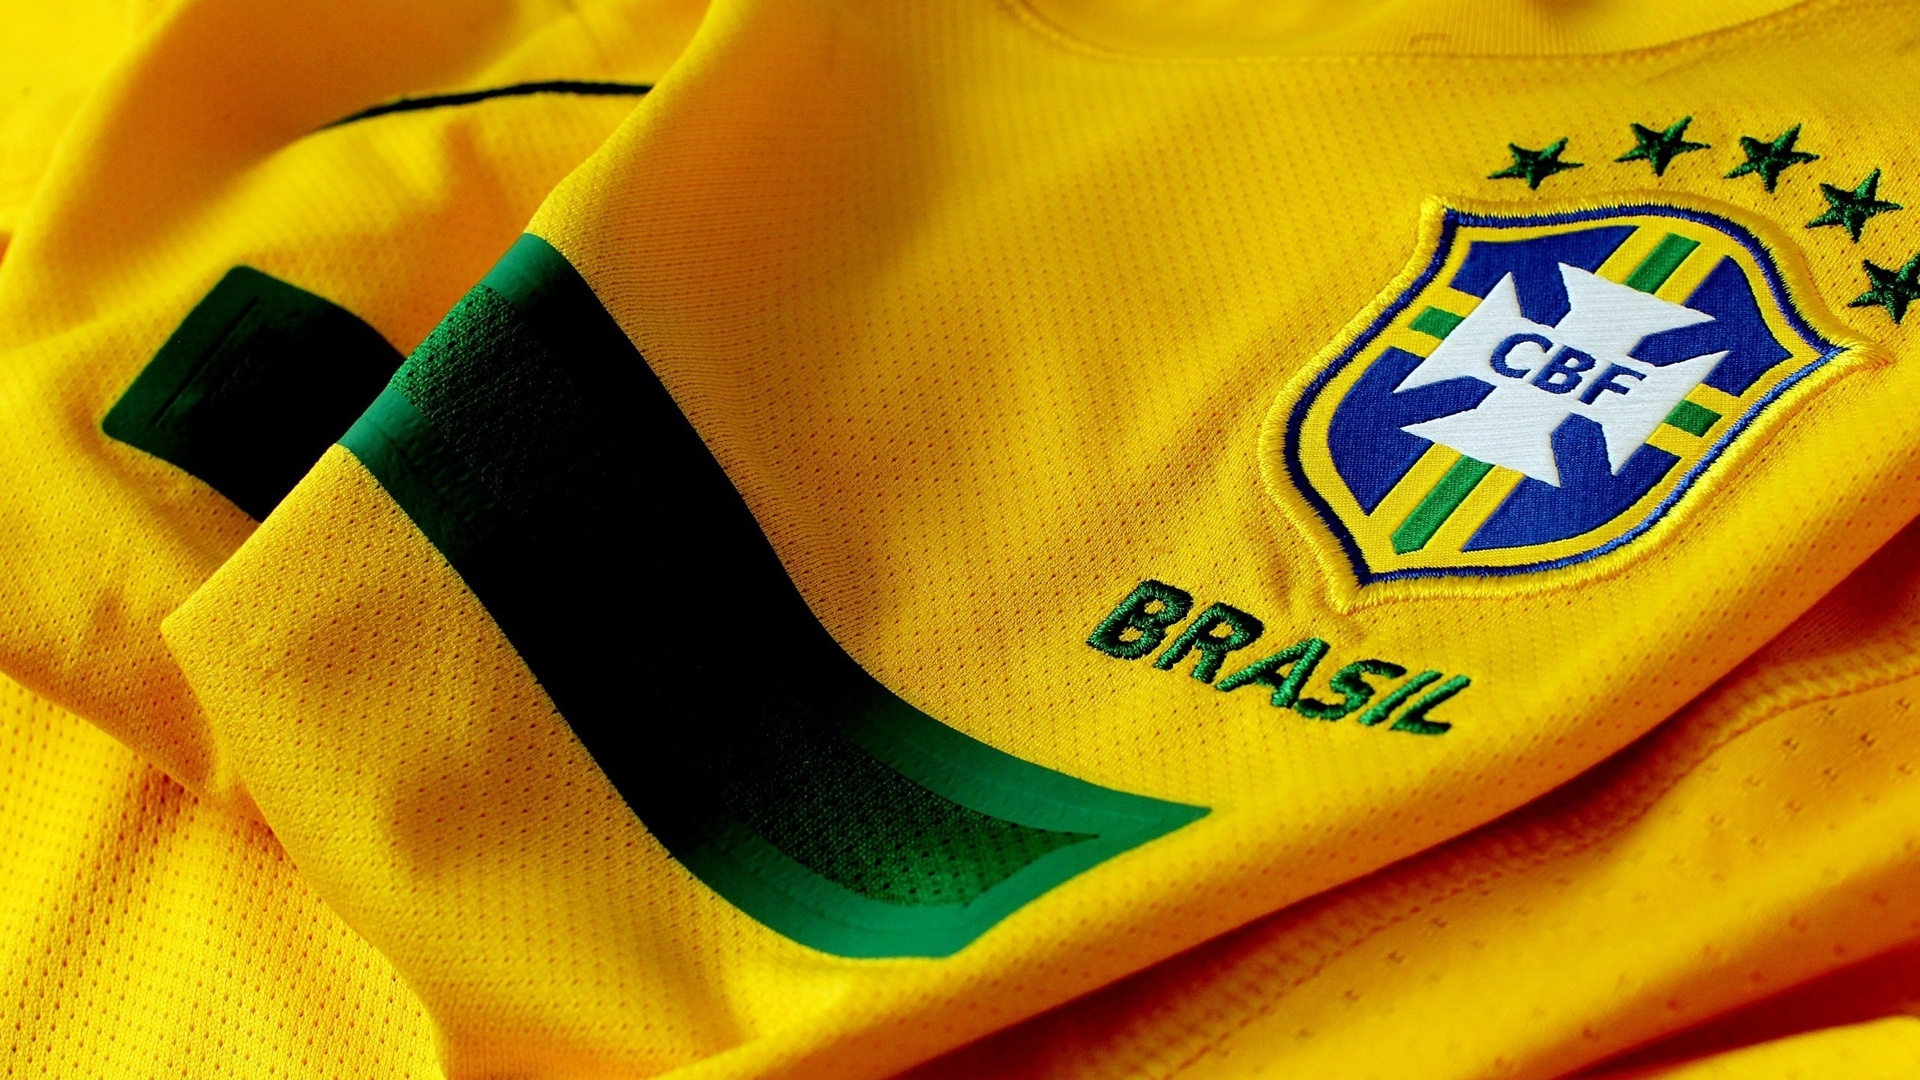 Brazil national team shirt